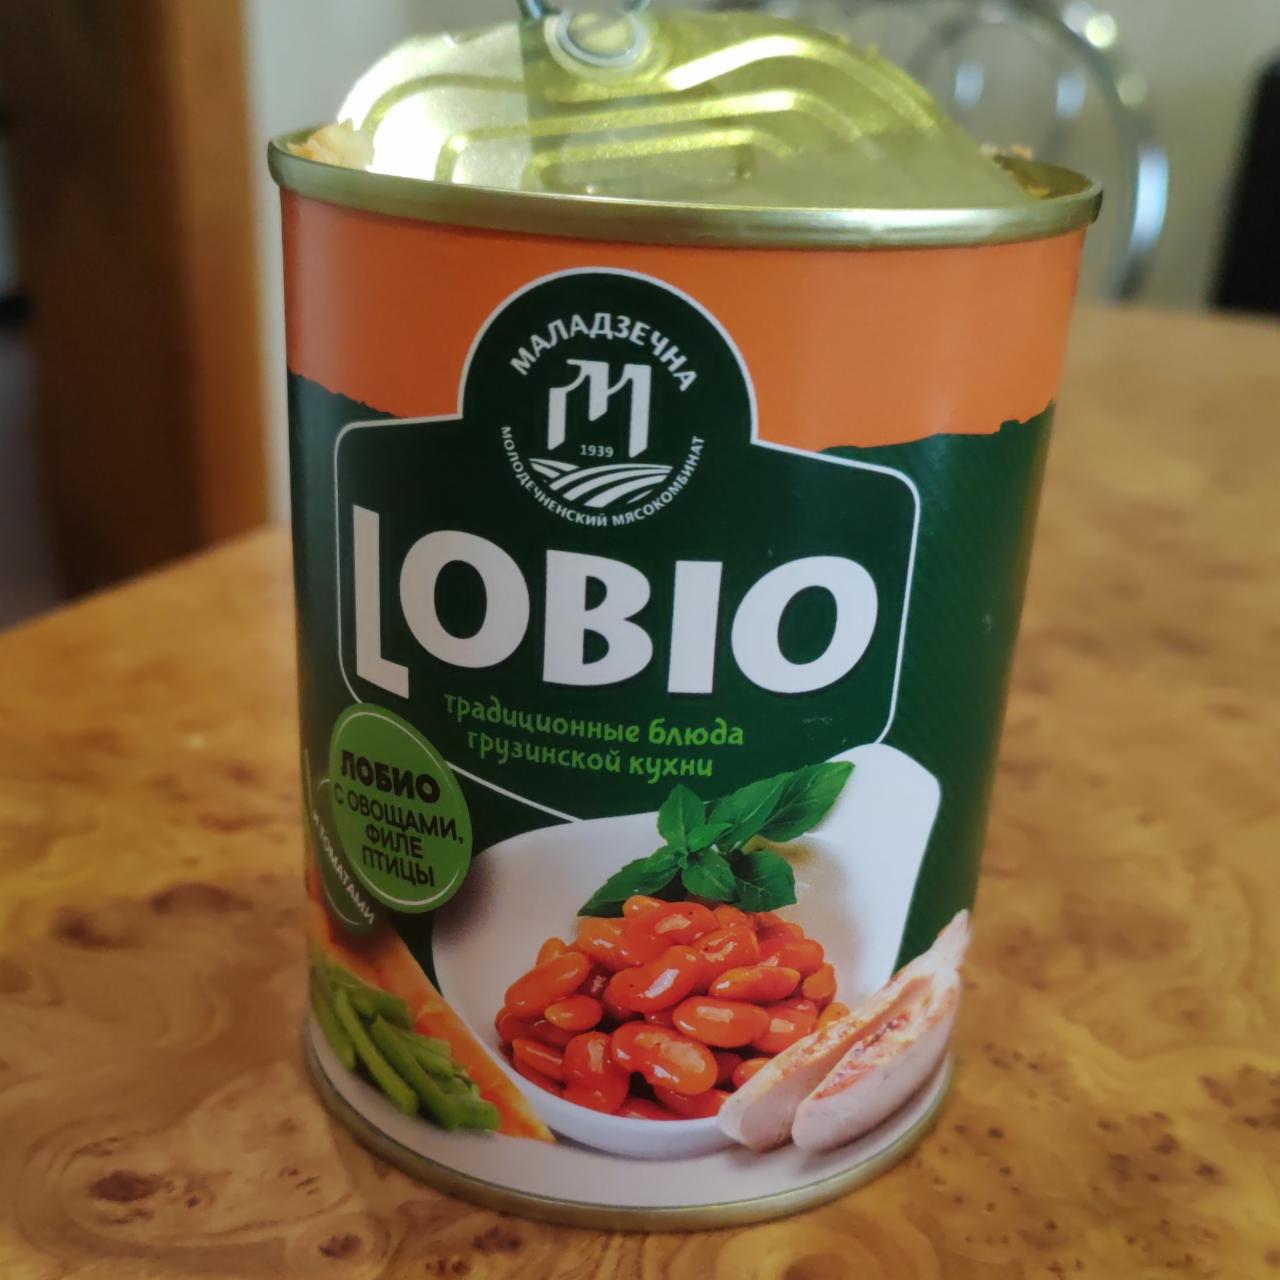 Фото - Консервы Лобио с овощами и томатной пастой Lobio